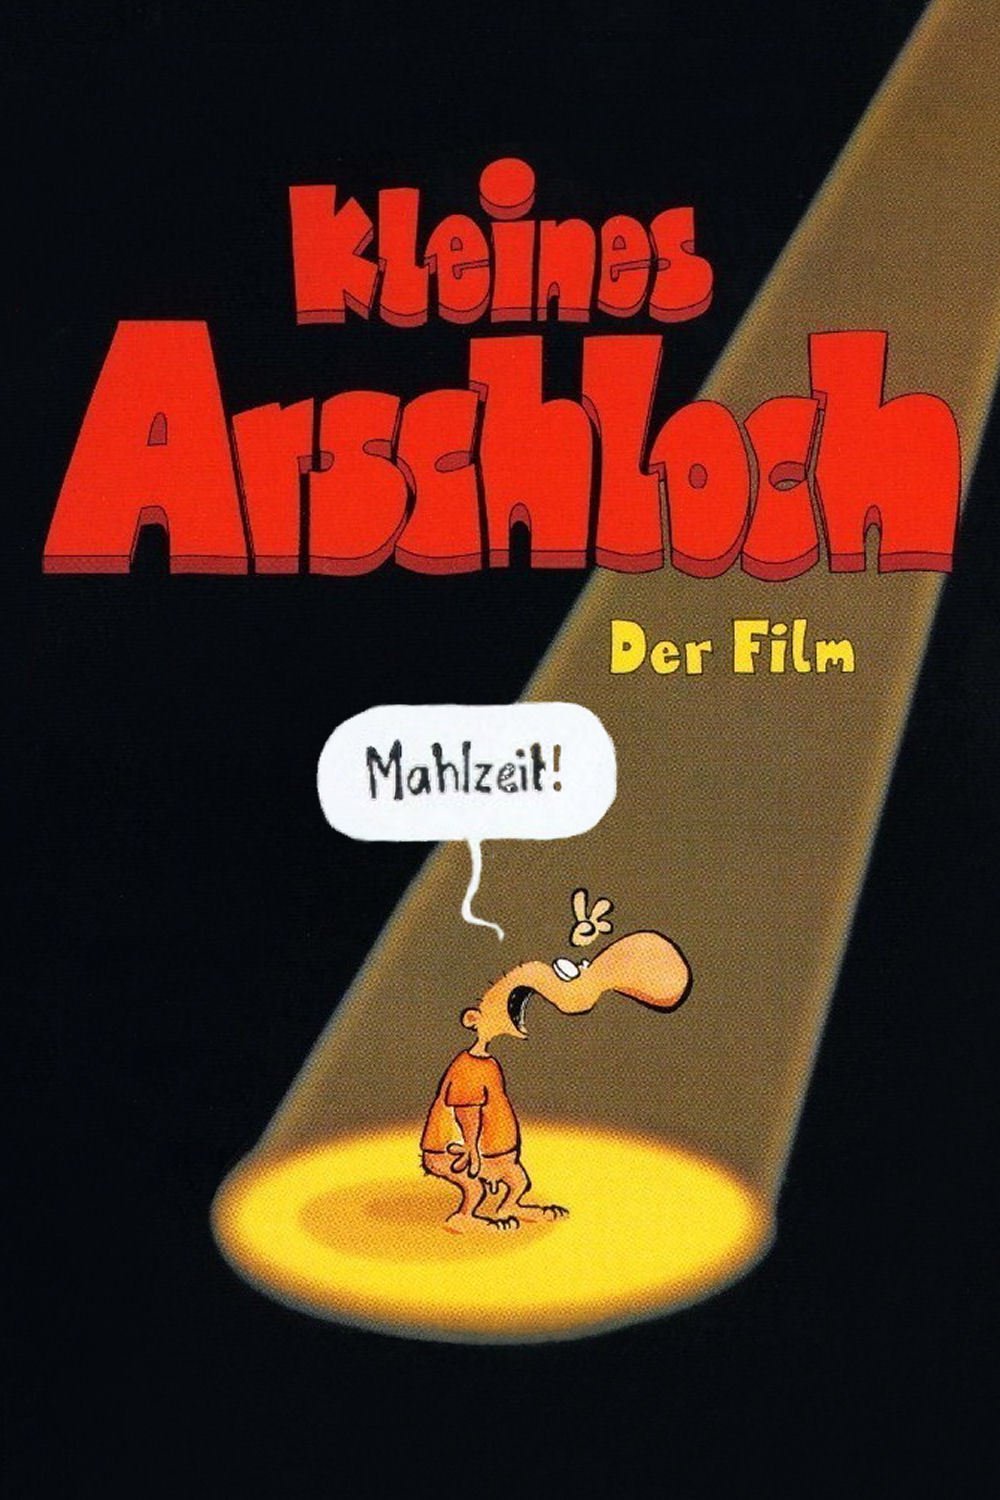 Plakat von "Kleines Arschloch - Der Film"